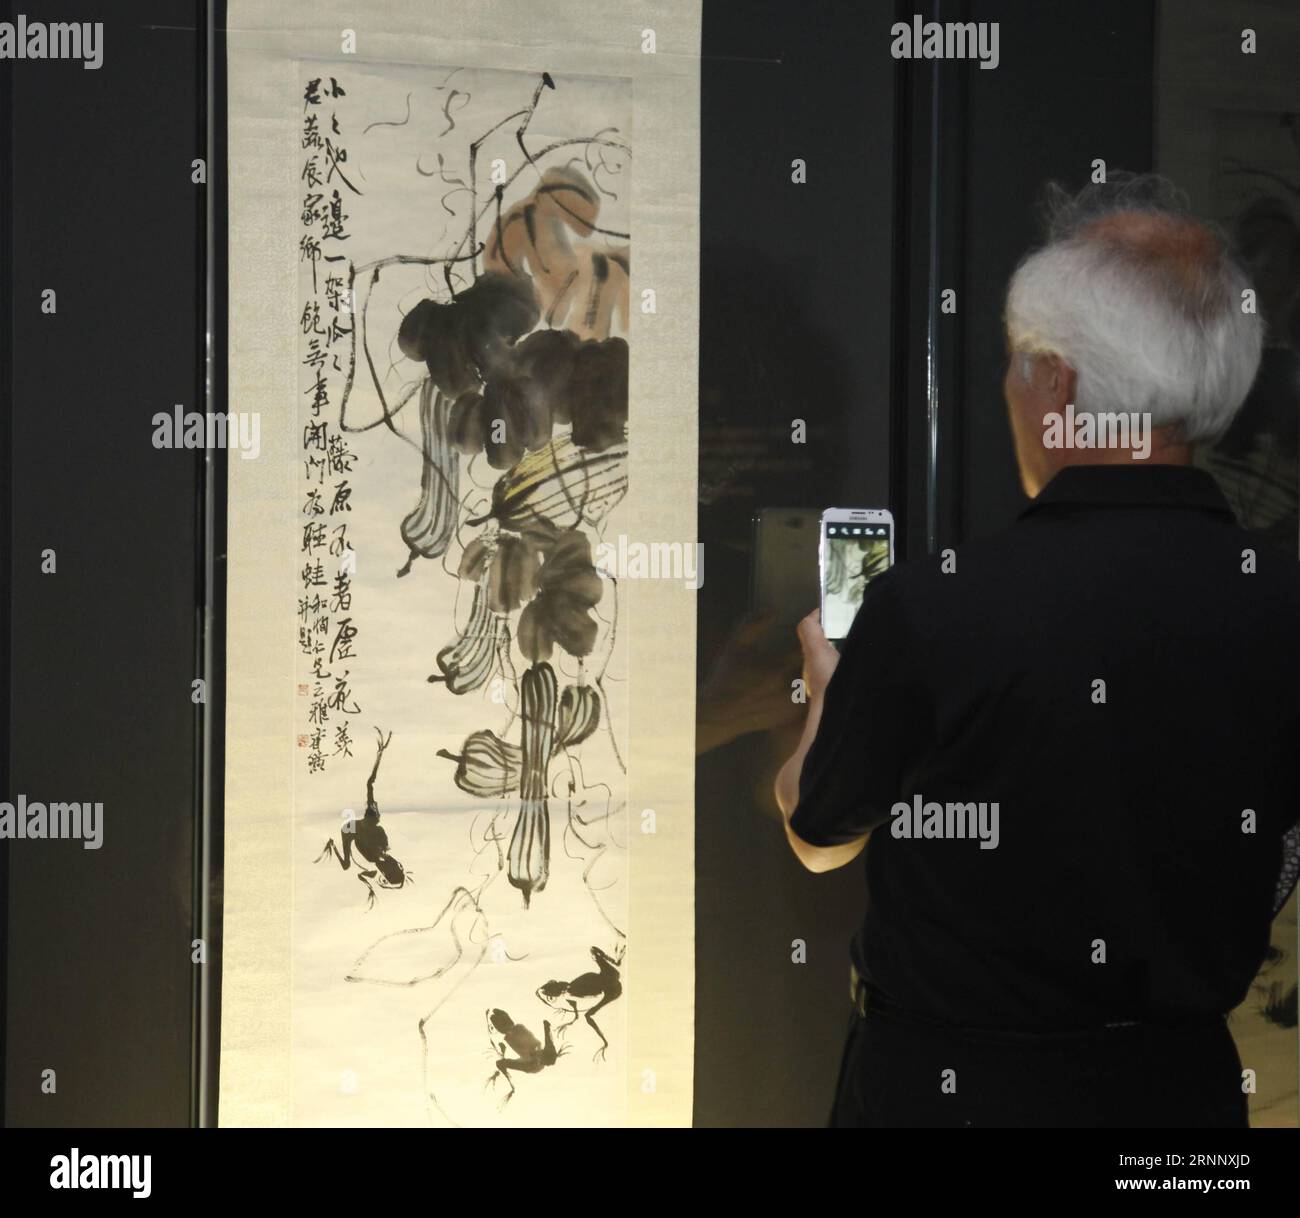 (170731) -- SÉOUL, le 31 juillet 2017 -- Un visiteur regarde l'œuvre de l'artiste chinois Qi Baishi lors d'une exposition à Séoul, en Corée du Sud, le 31 juillet 2017. Les œuvres de Qi Baishi, qui sont recueillies par le Hunan provincial Museum, sont exposées pour la première fois à Séoul. (rh) CORÉE DU SUD-SÉOUL-EXHIBITION-QI BAISHI YaoxQilin PUBLICATIONxNOTxINxCHN Séoul juillet 31 2017 un visiteur regarde l'œuvre de l'artiste chinois Qi Baishi pendant l'exposition à Séoul Corée du Sud LE 31 2017 juillet, les œuvres de Qi Baishi qui sont collectées par le Hunan provincial Museum sont exposées à Séoul pour la première Banque D'Images